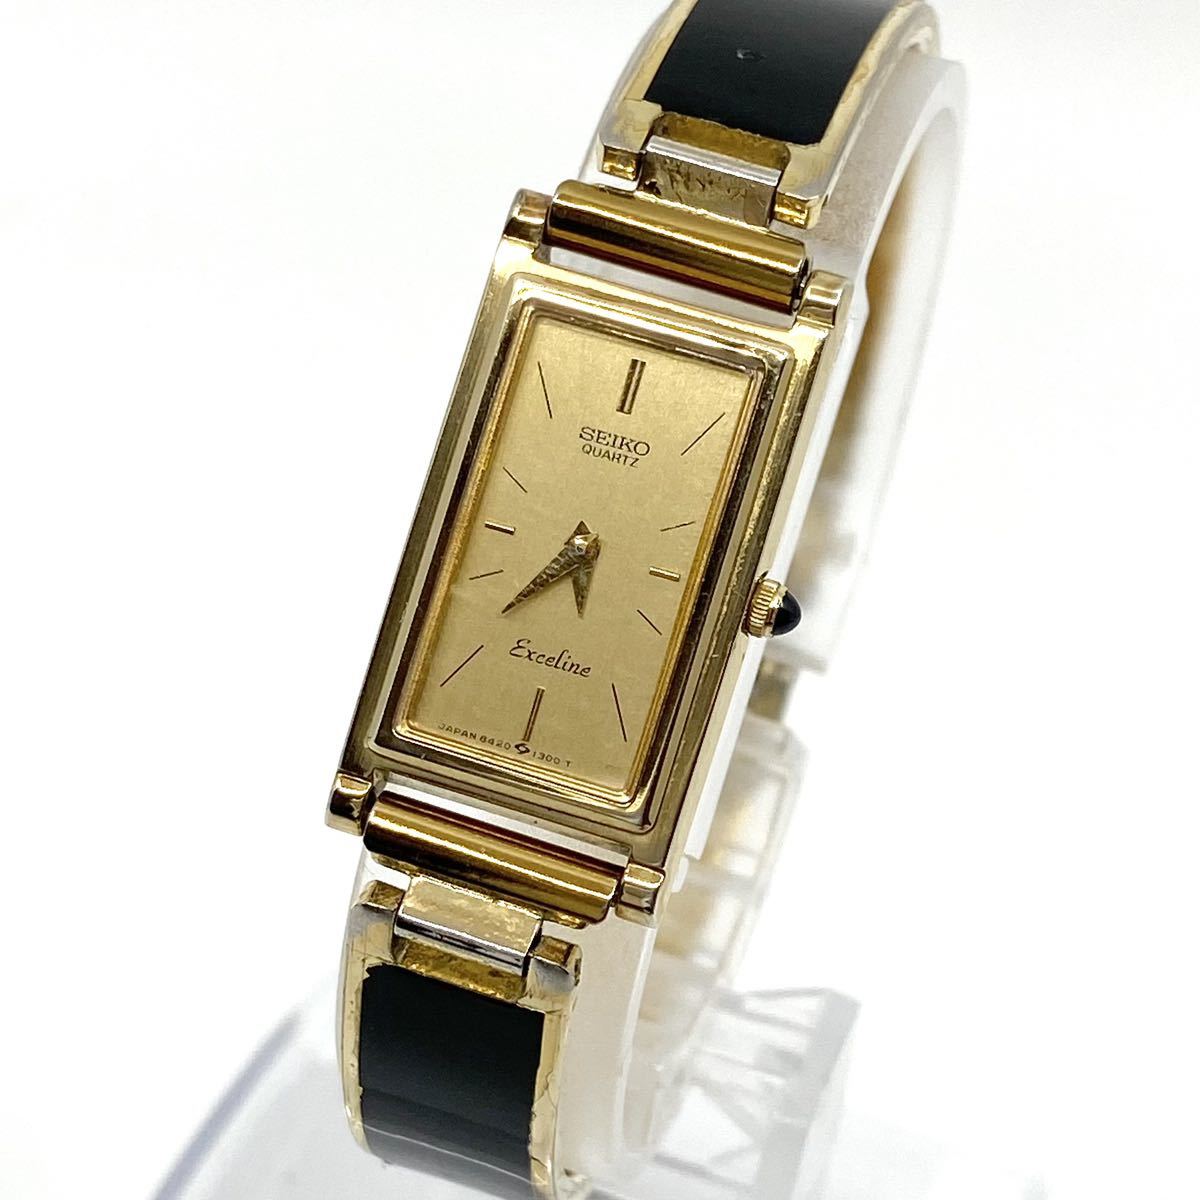 SEIKO Exceline 腕時計 バングルウォッチ レクタンギュラー クォーツ quartz 2針 ゴールド ブラック 金 黒 セイコー エクセリーヌ Y248